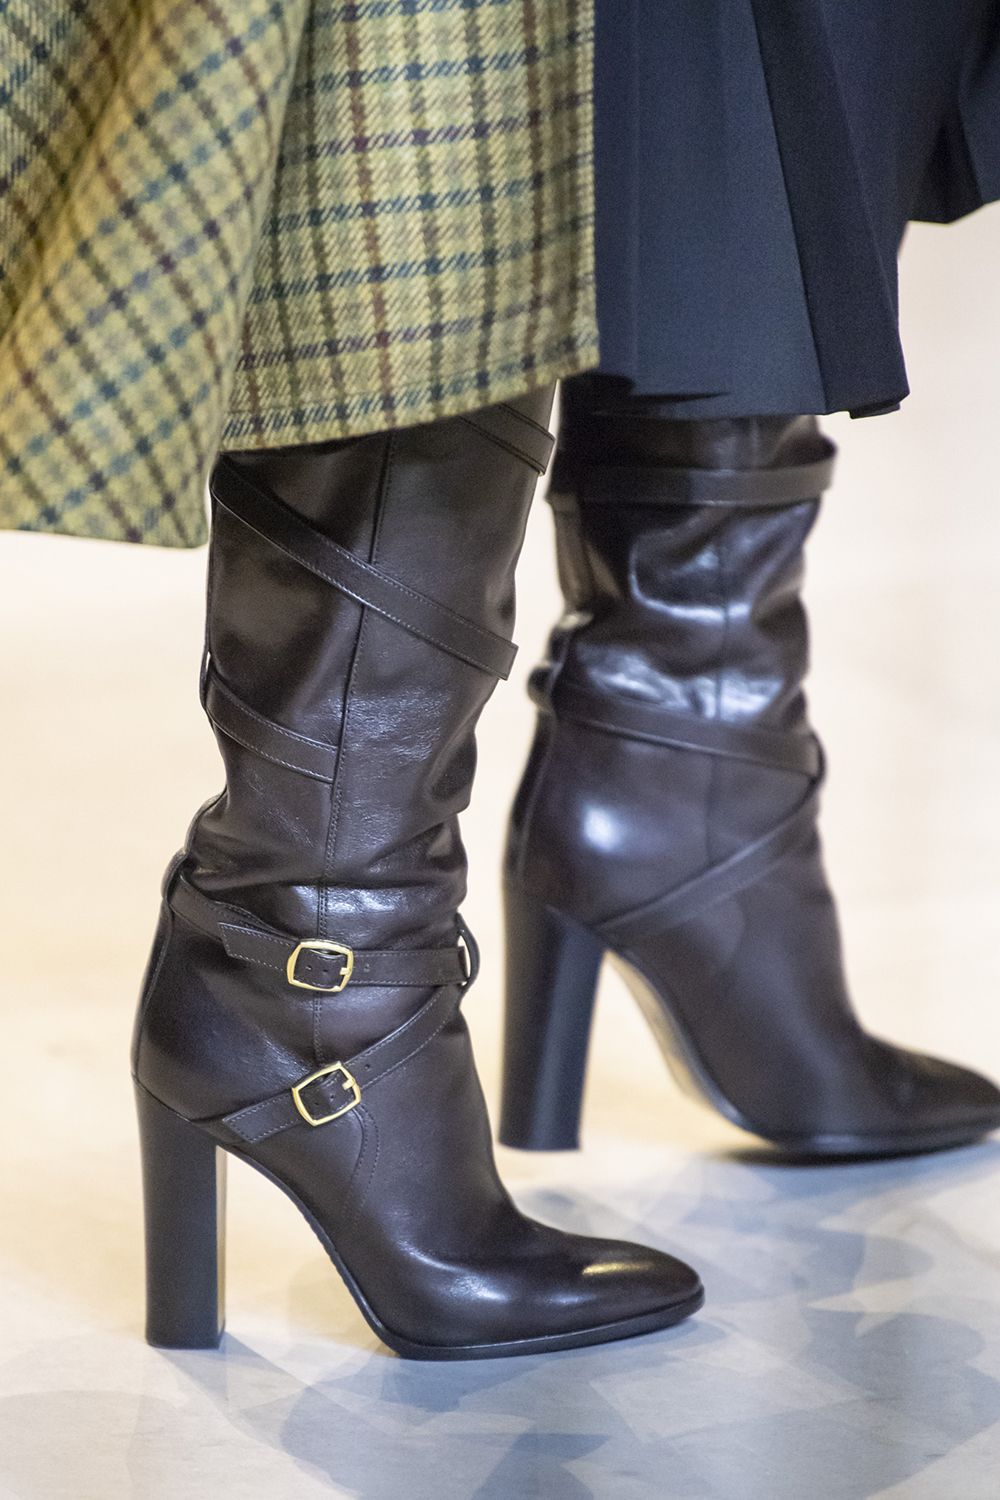 Gli stivali tendenza moda Autunno Inverno 2020 2021 alle sfilate